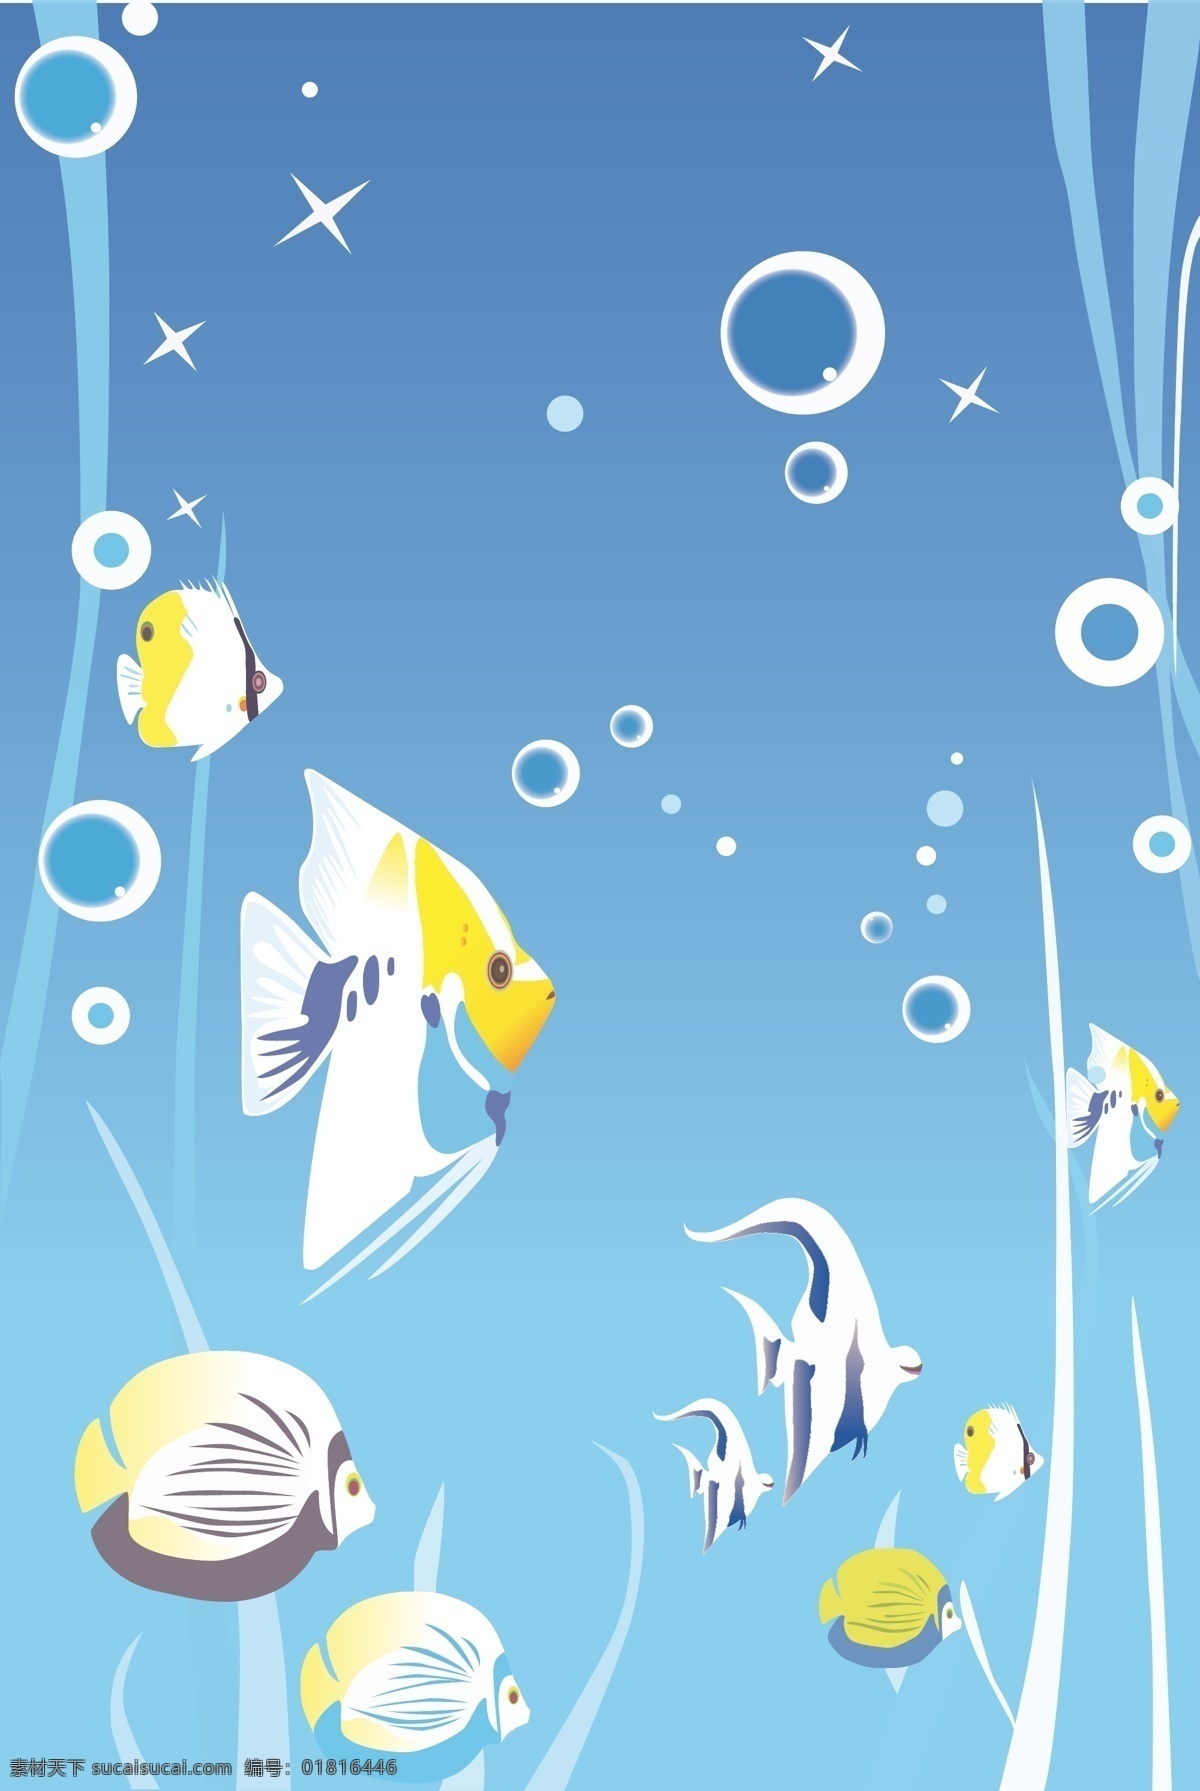 海底 世界 海底世界 海洋鱼 泡泡 热带鱼 水草 星光 移门 移门素材 移门图案 鱼群 黄色鱼 小黄鱼 家居装饰素材